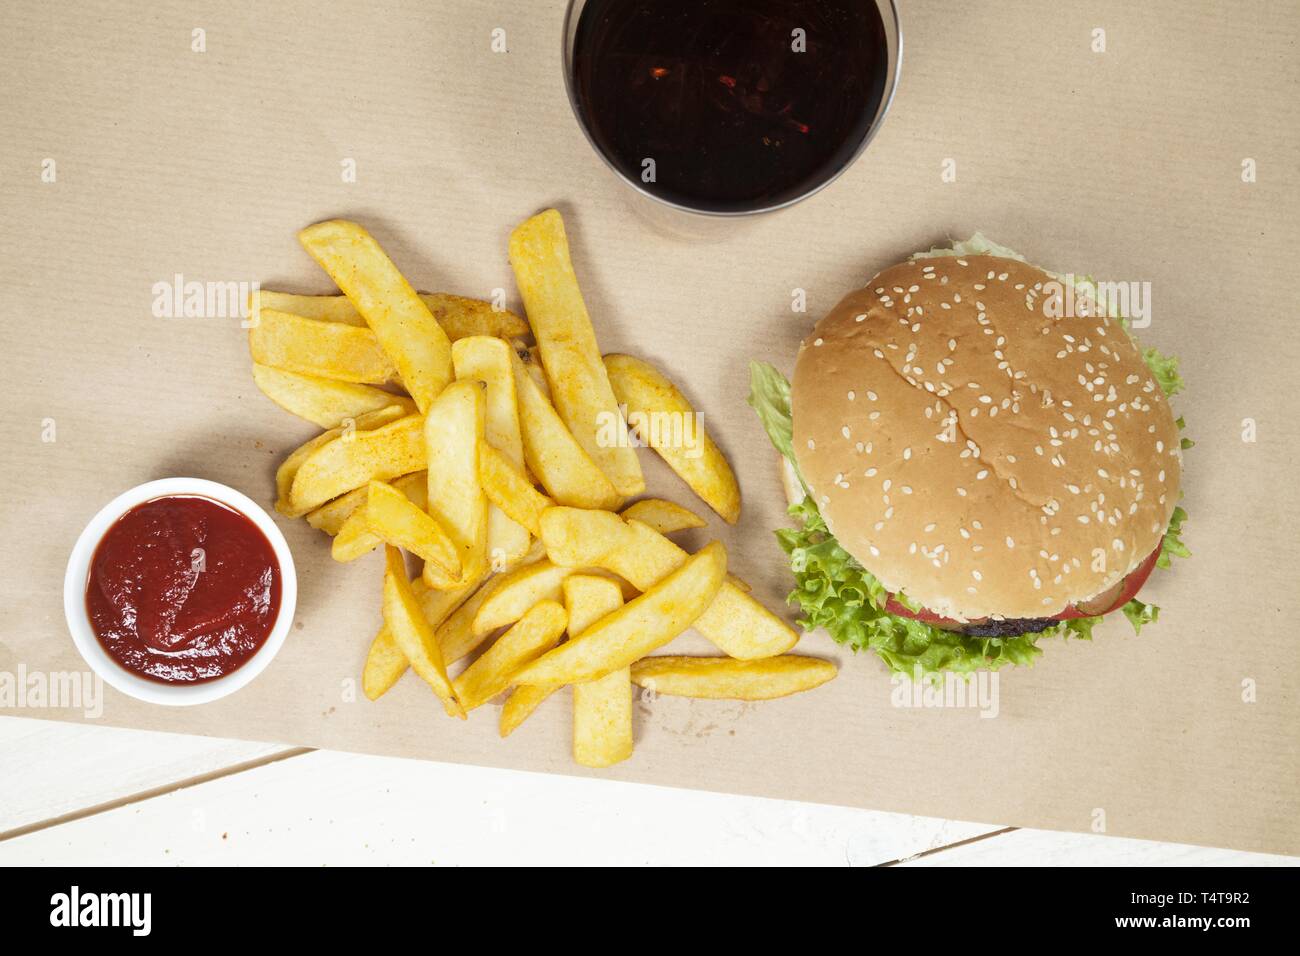 Hamburger with fries, ketchup and Coke Stock Photo